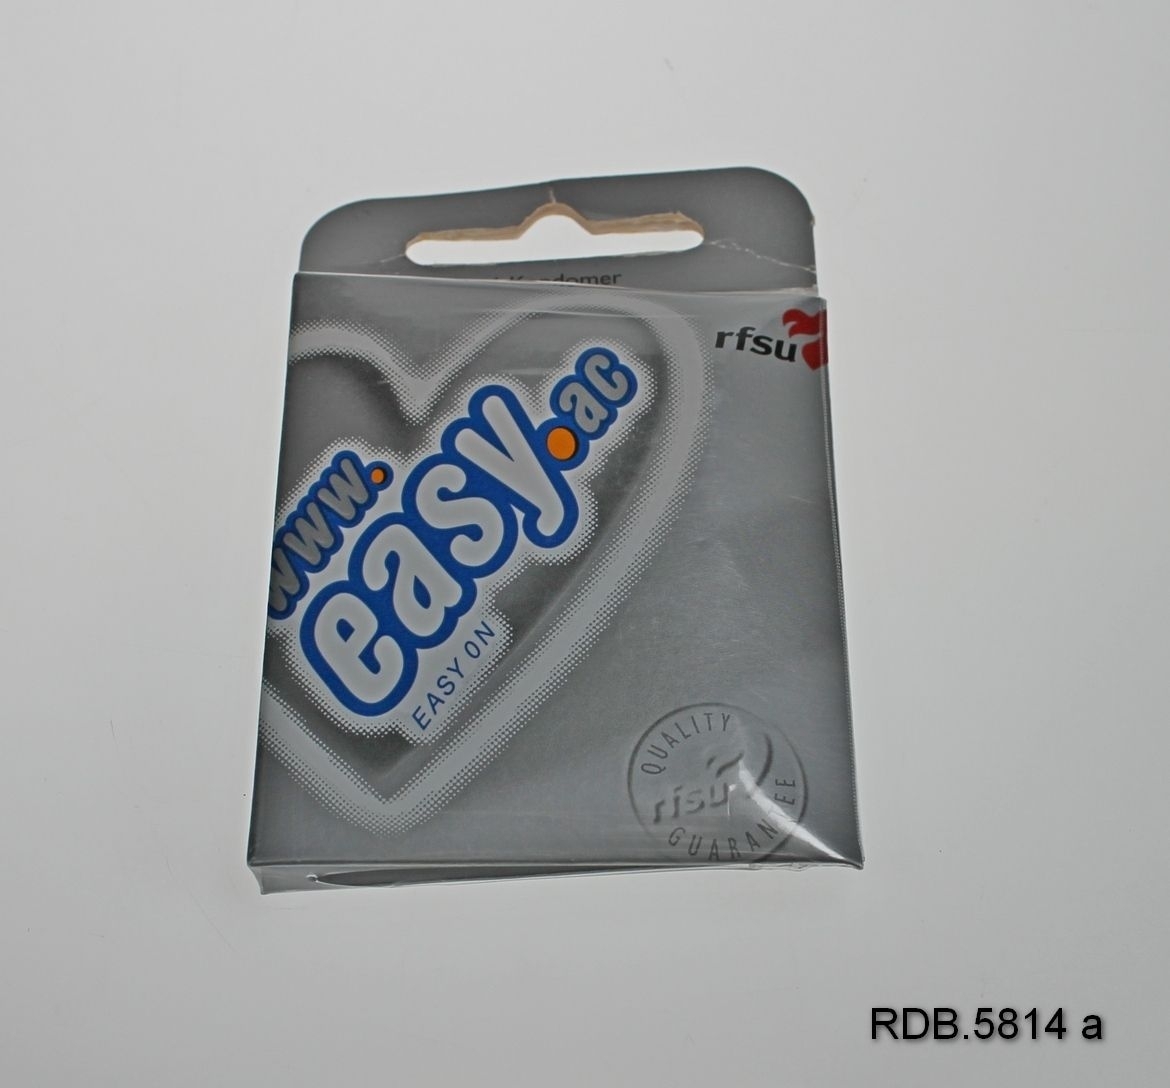 En uåpnet pakke som inneholder 6 kondomer merke Easy. Sølvfarget pappetui. Øverst en utstanset åpning til å henge pakken opp etter.